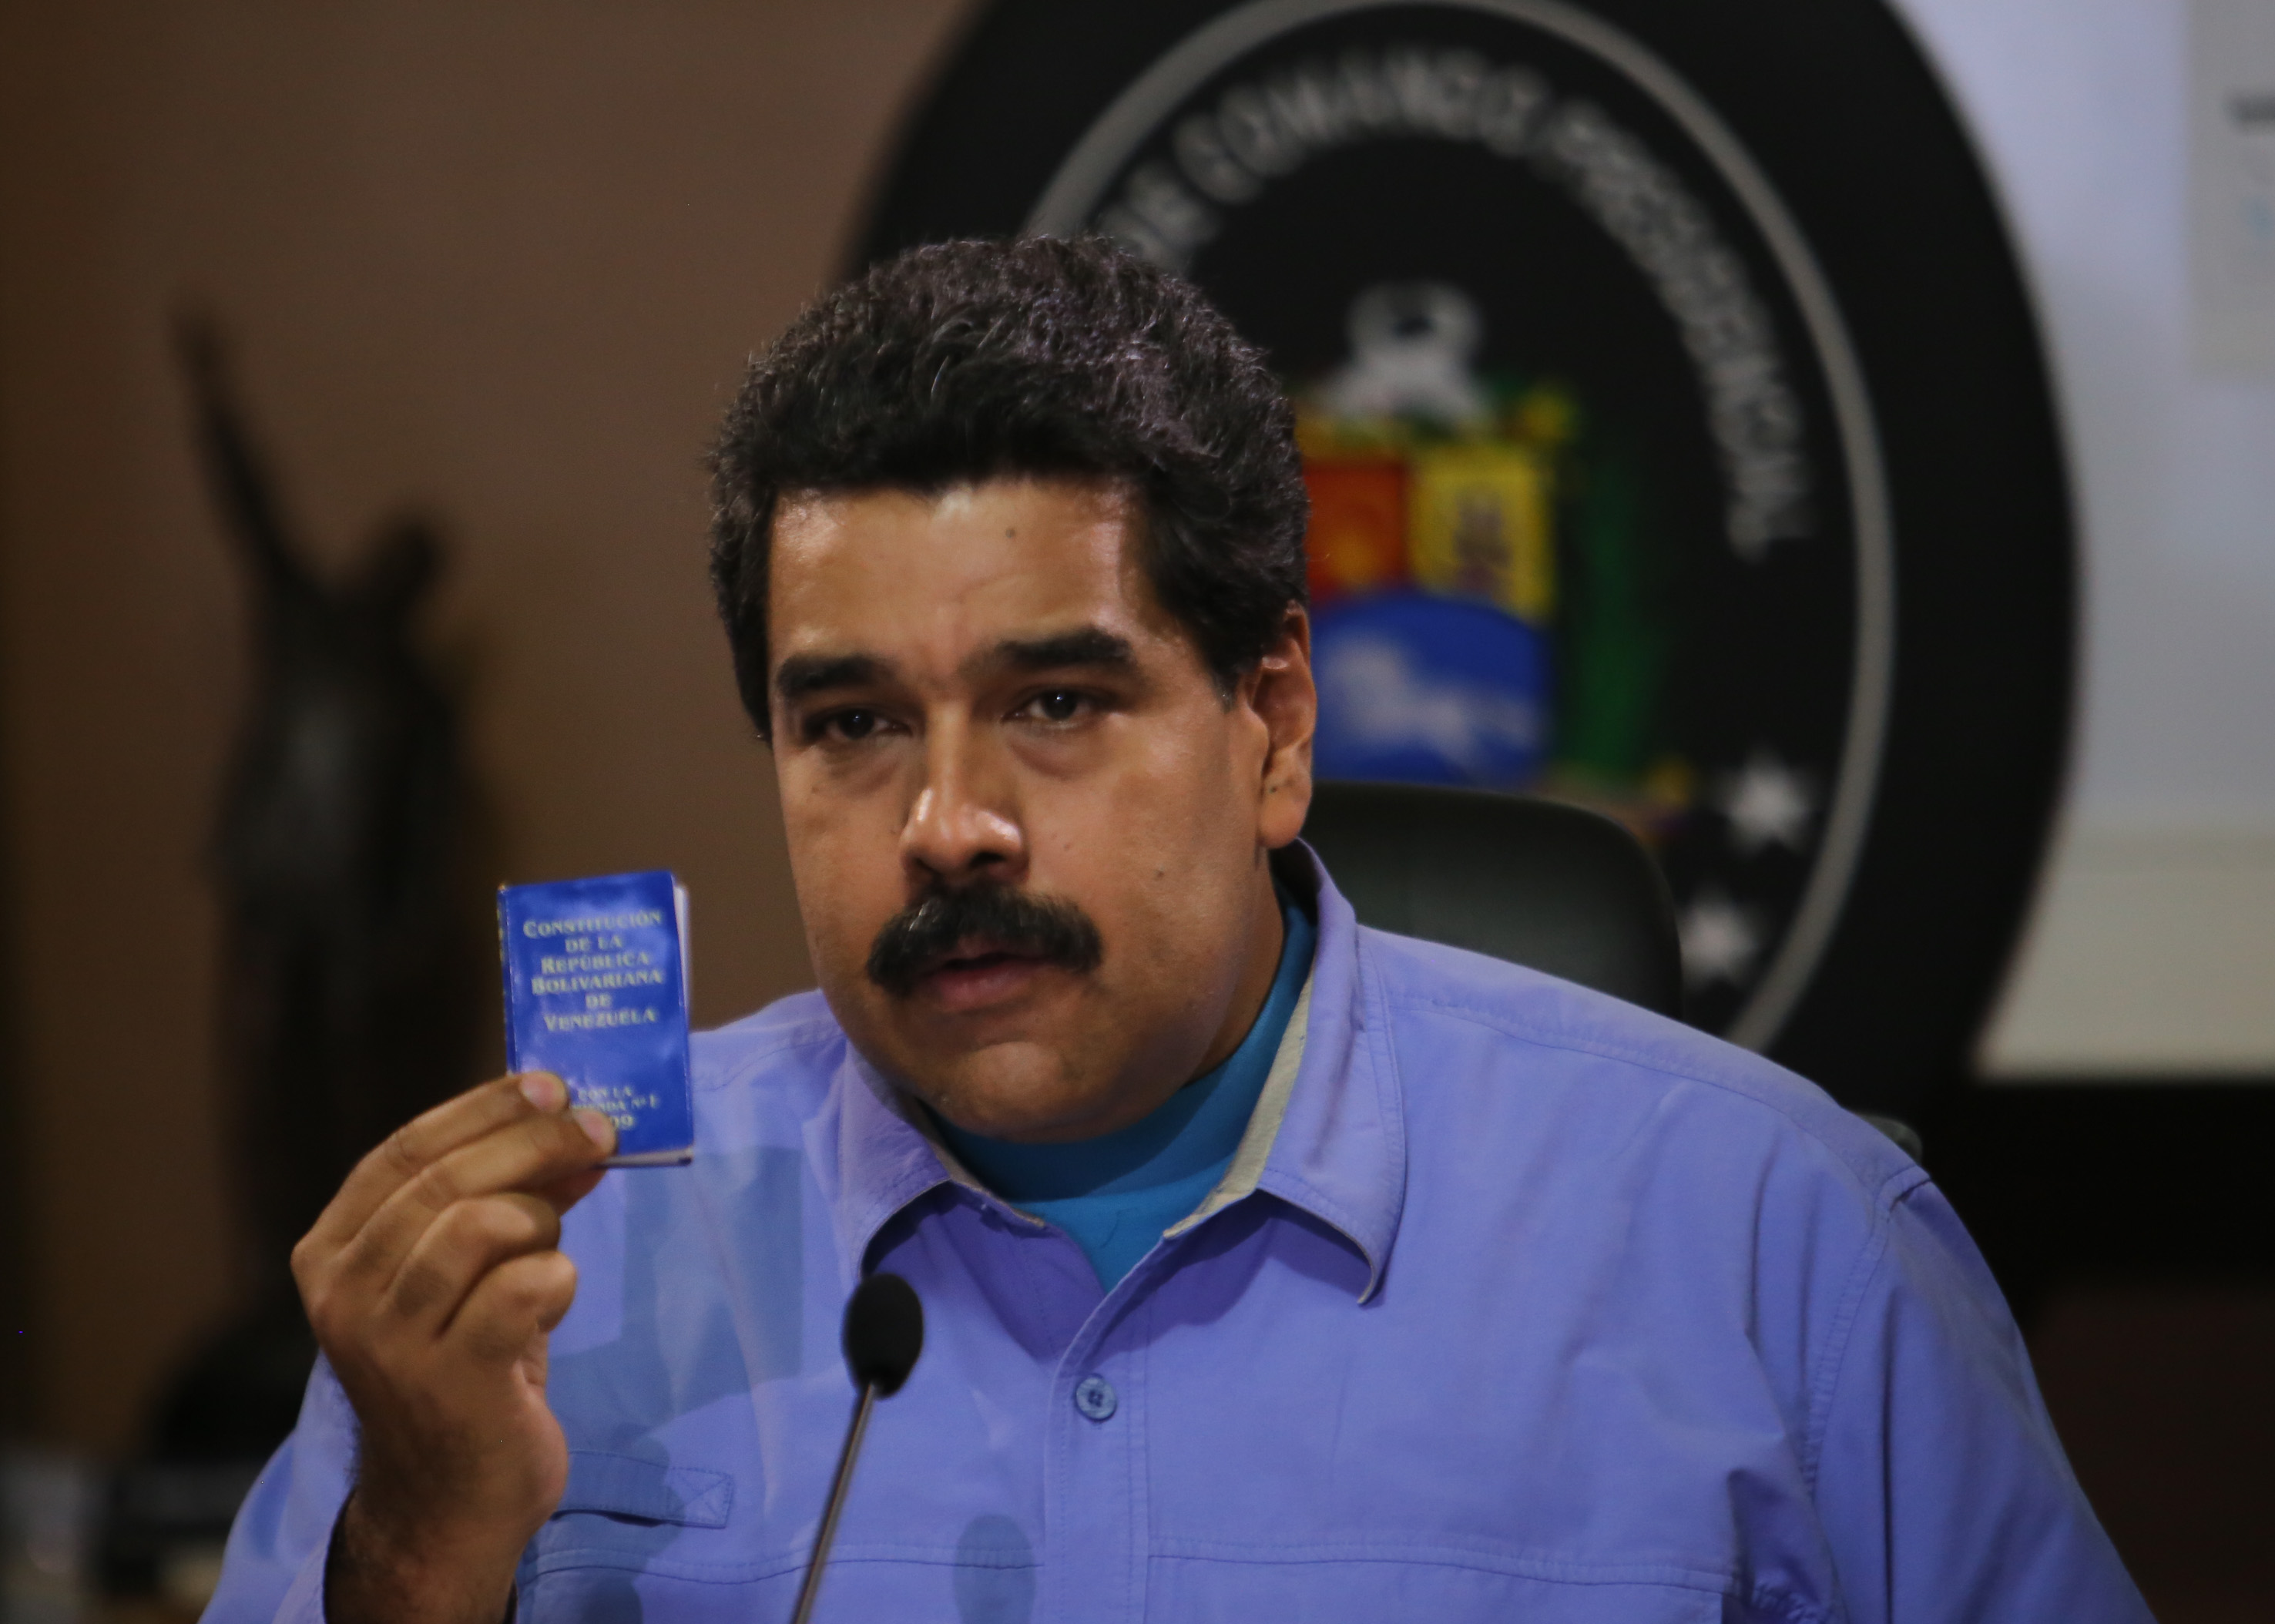 El presidente de Venezuela, Nicolás Maduro extendió el decreto por 60 días.